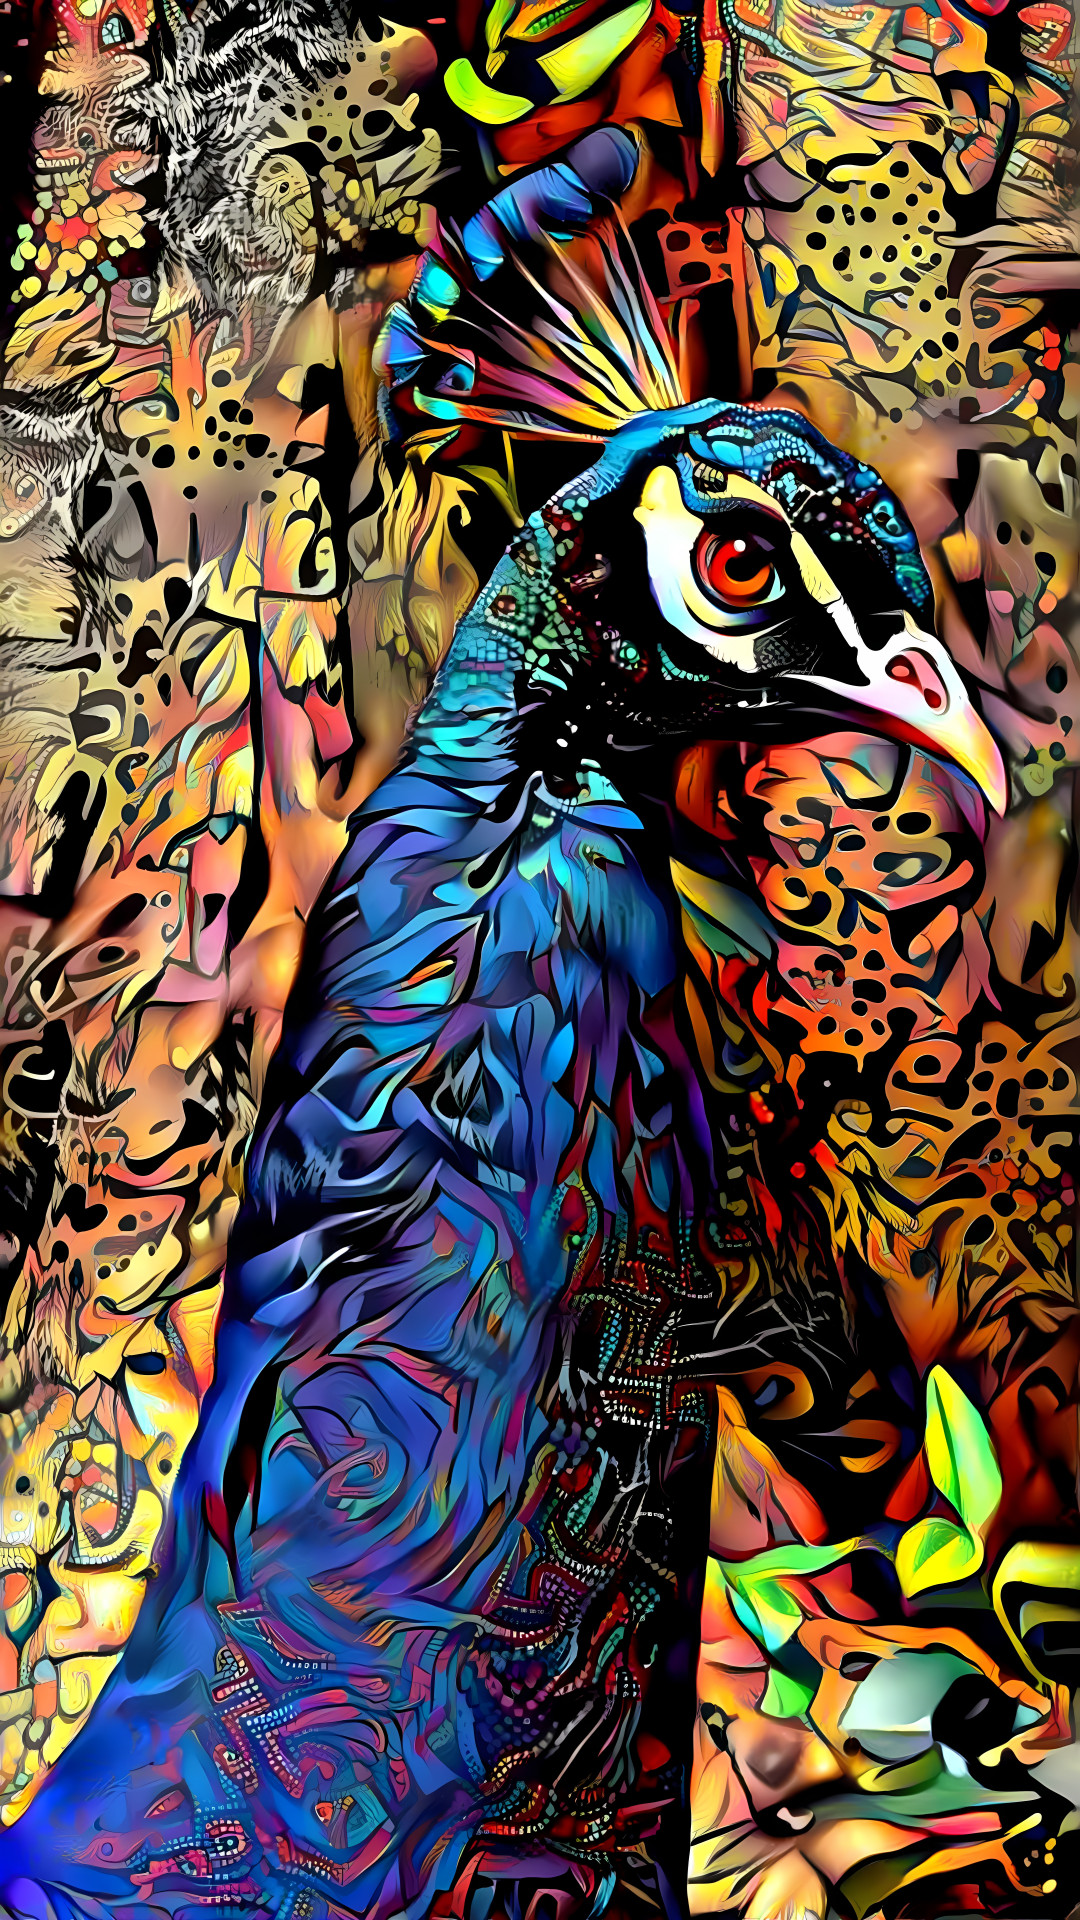 Peacock - Style by fellow DDG member Gypsy Cat